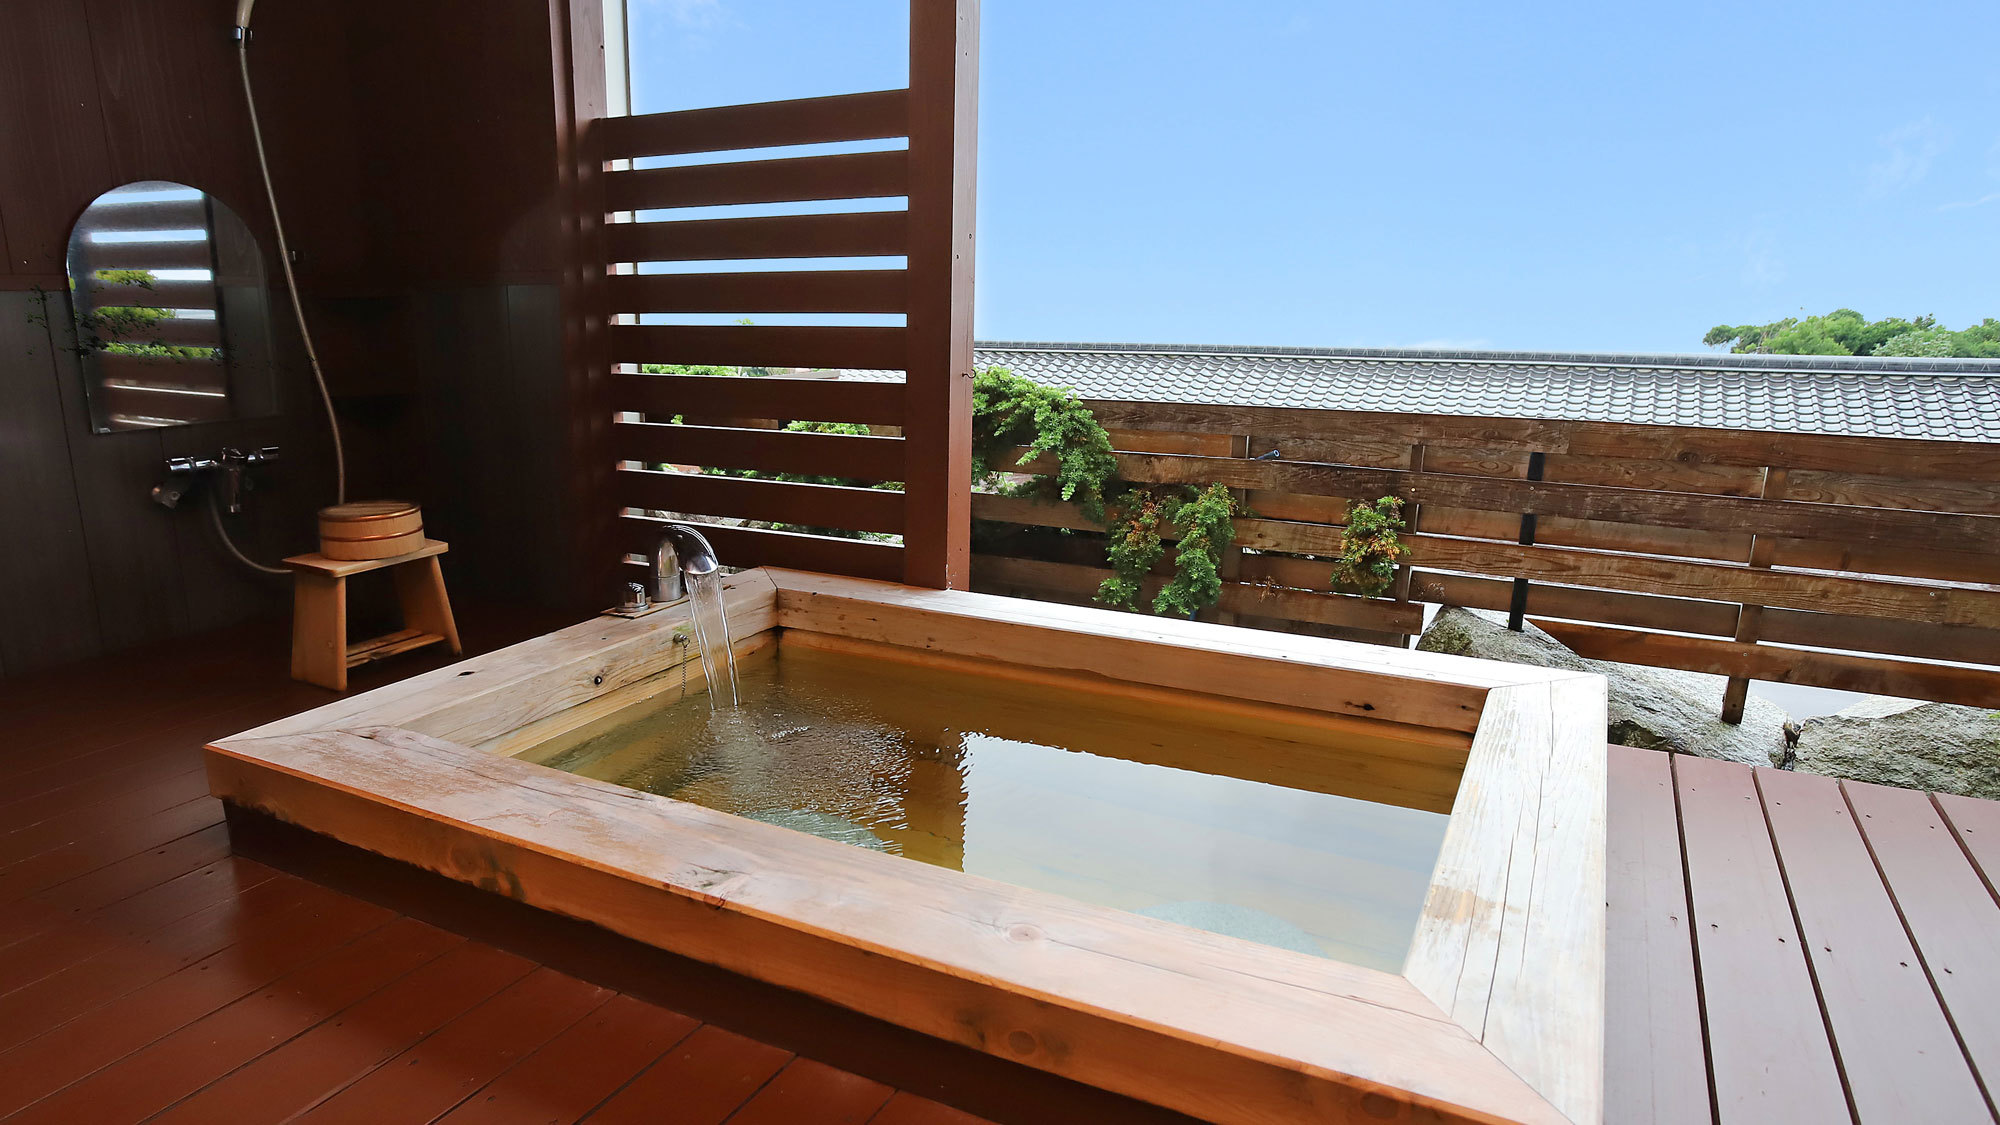 お部屋の温泉露天風呂。美人の湯と名高い「榊原温泉の湯」をお部屋で。桧風呂タイプ。